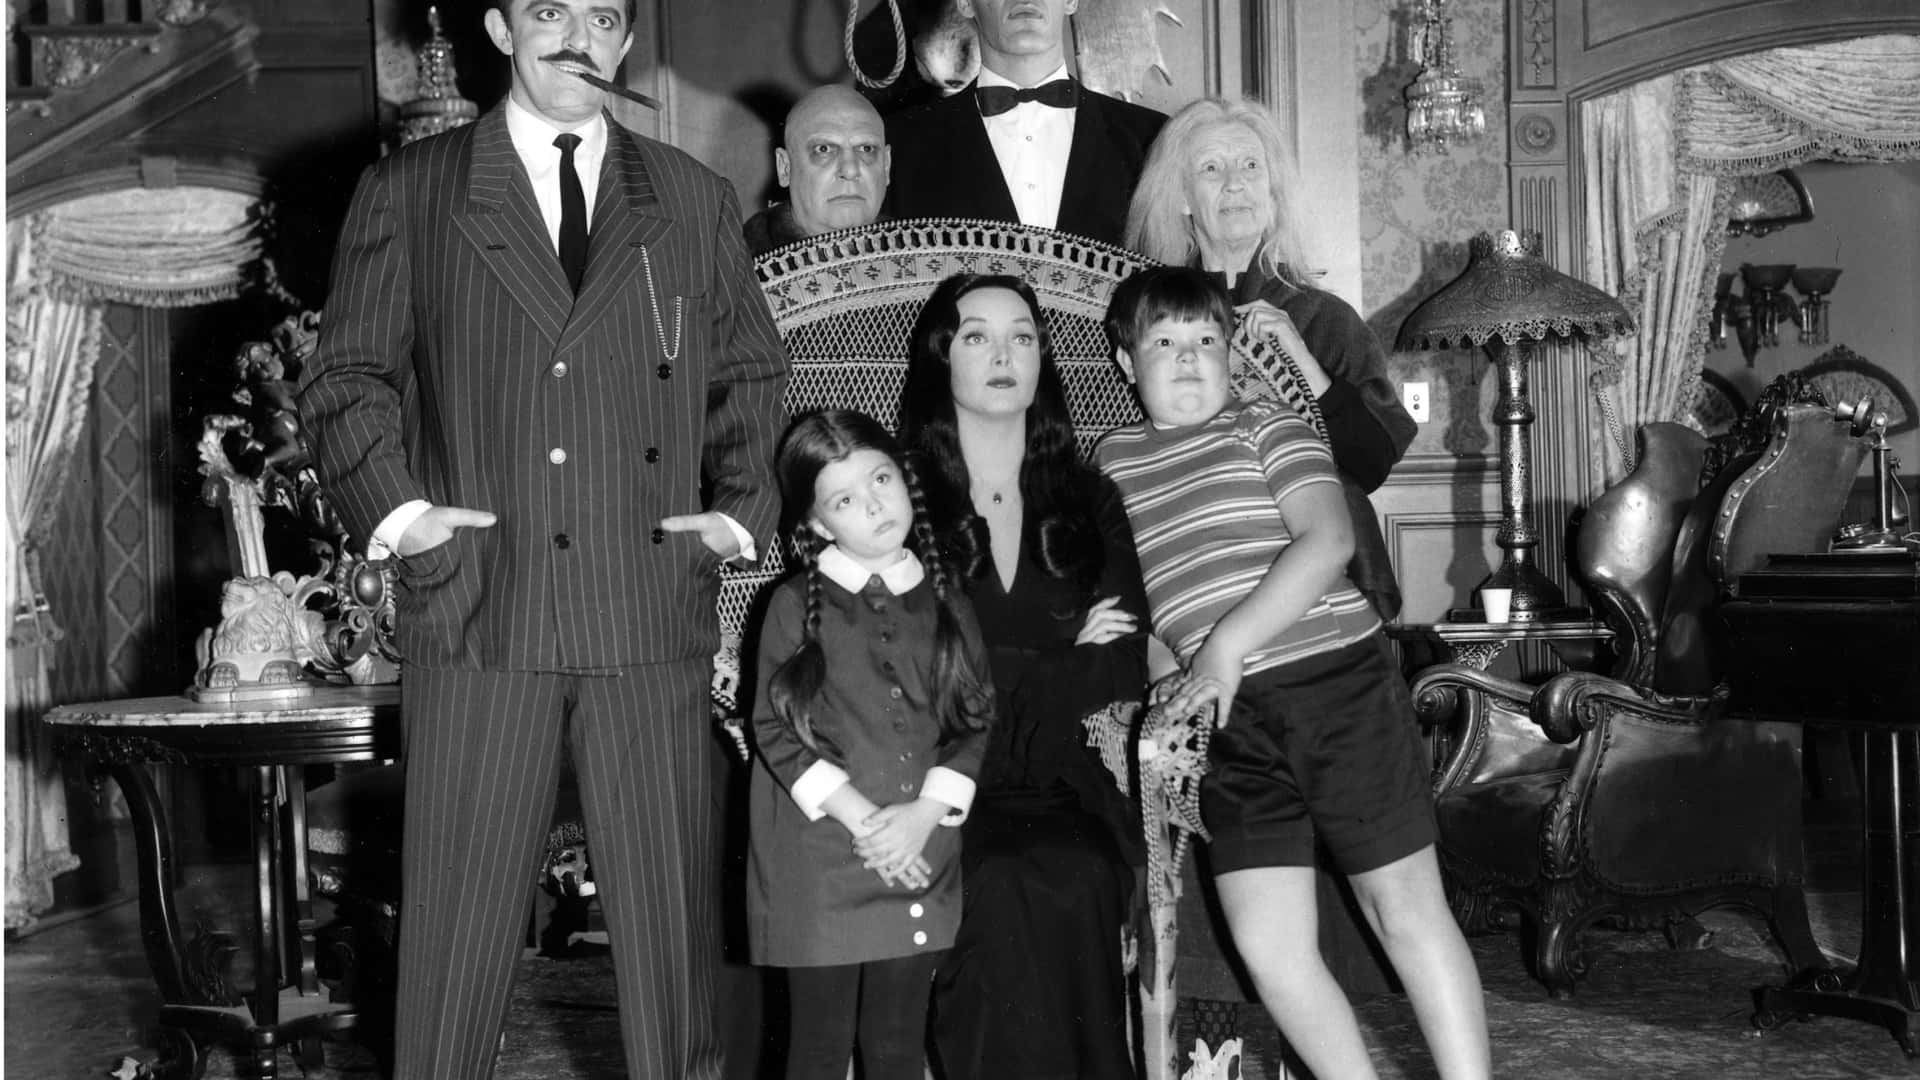 Lafamilia Addams, La Peculiar, Excéntrica Y Espeluznante Familia.